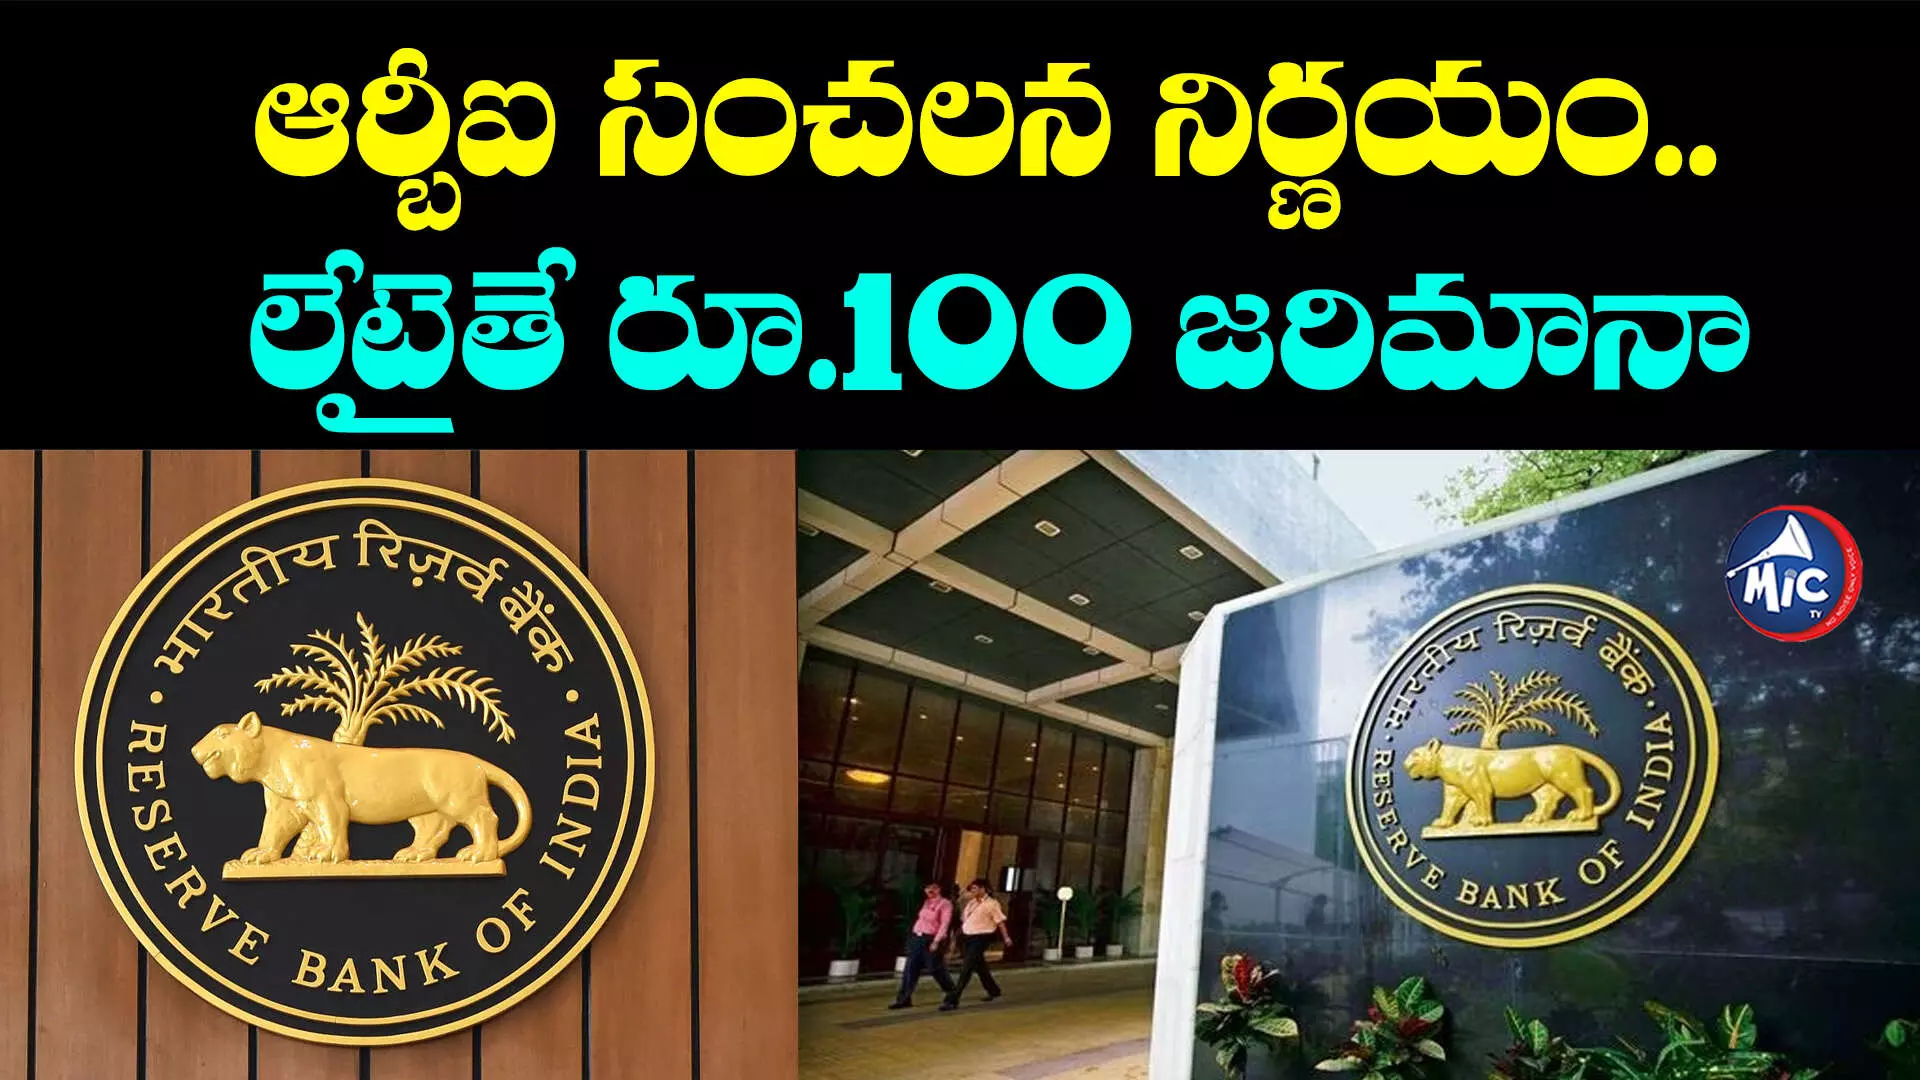 Reserve Bank Of India: ఆర్బీఐ సంచలన నిర్ణయం.. లేటైతే రూ.100 జరిమానా